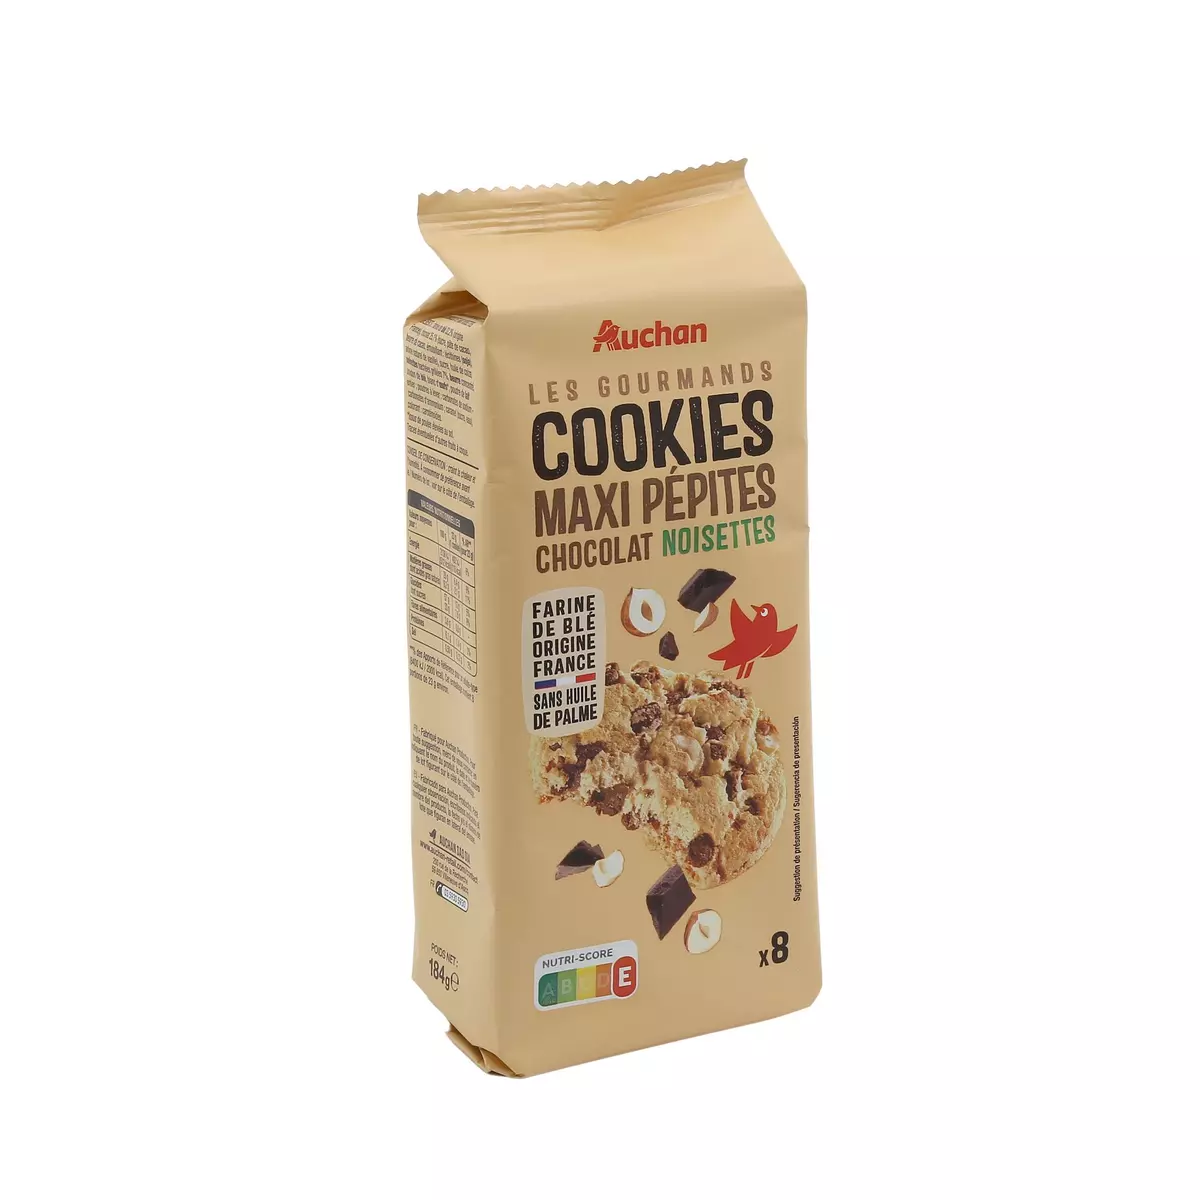 AUCHAN Les Gourmands Cookies maxi pépites chocolat noisettes 8 cookies 184g